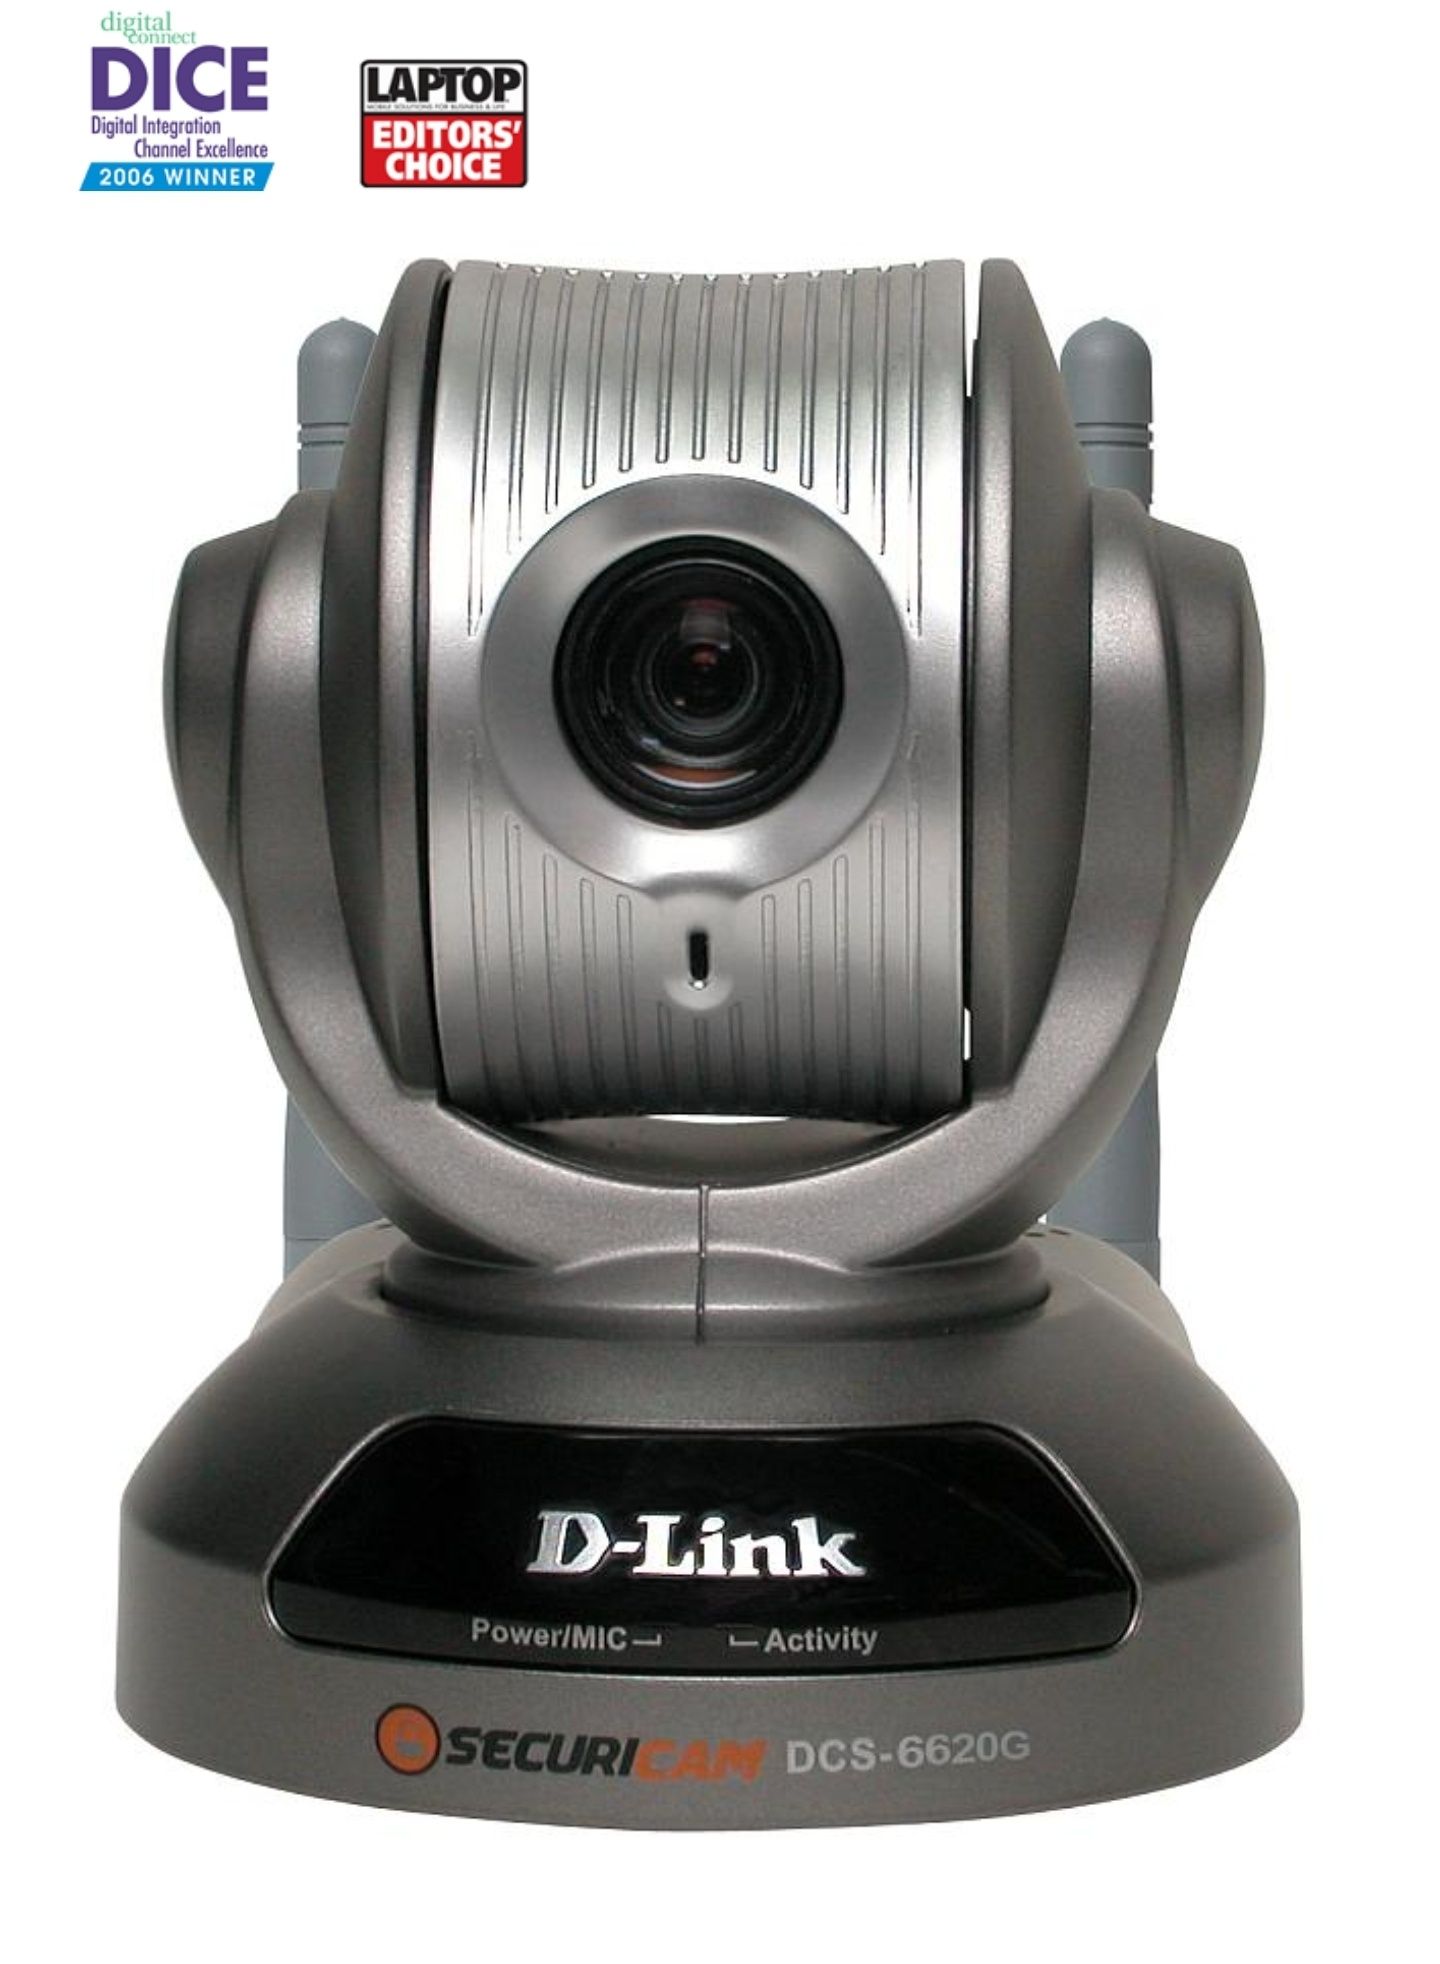 Dlink DCS-6620GEOL EOS
Securicam Network IP